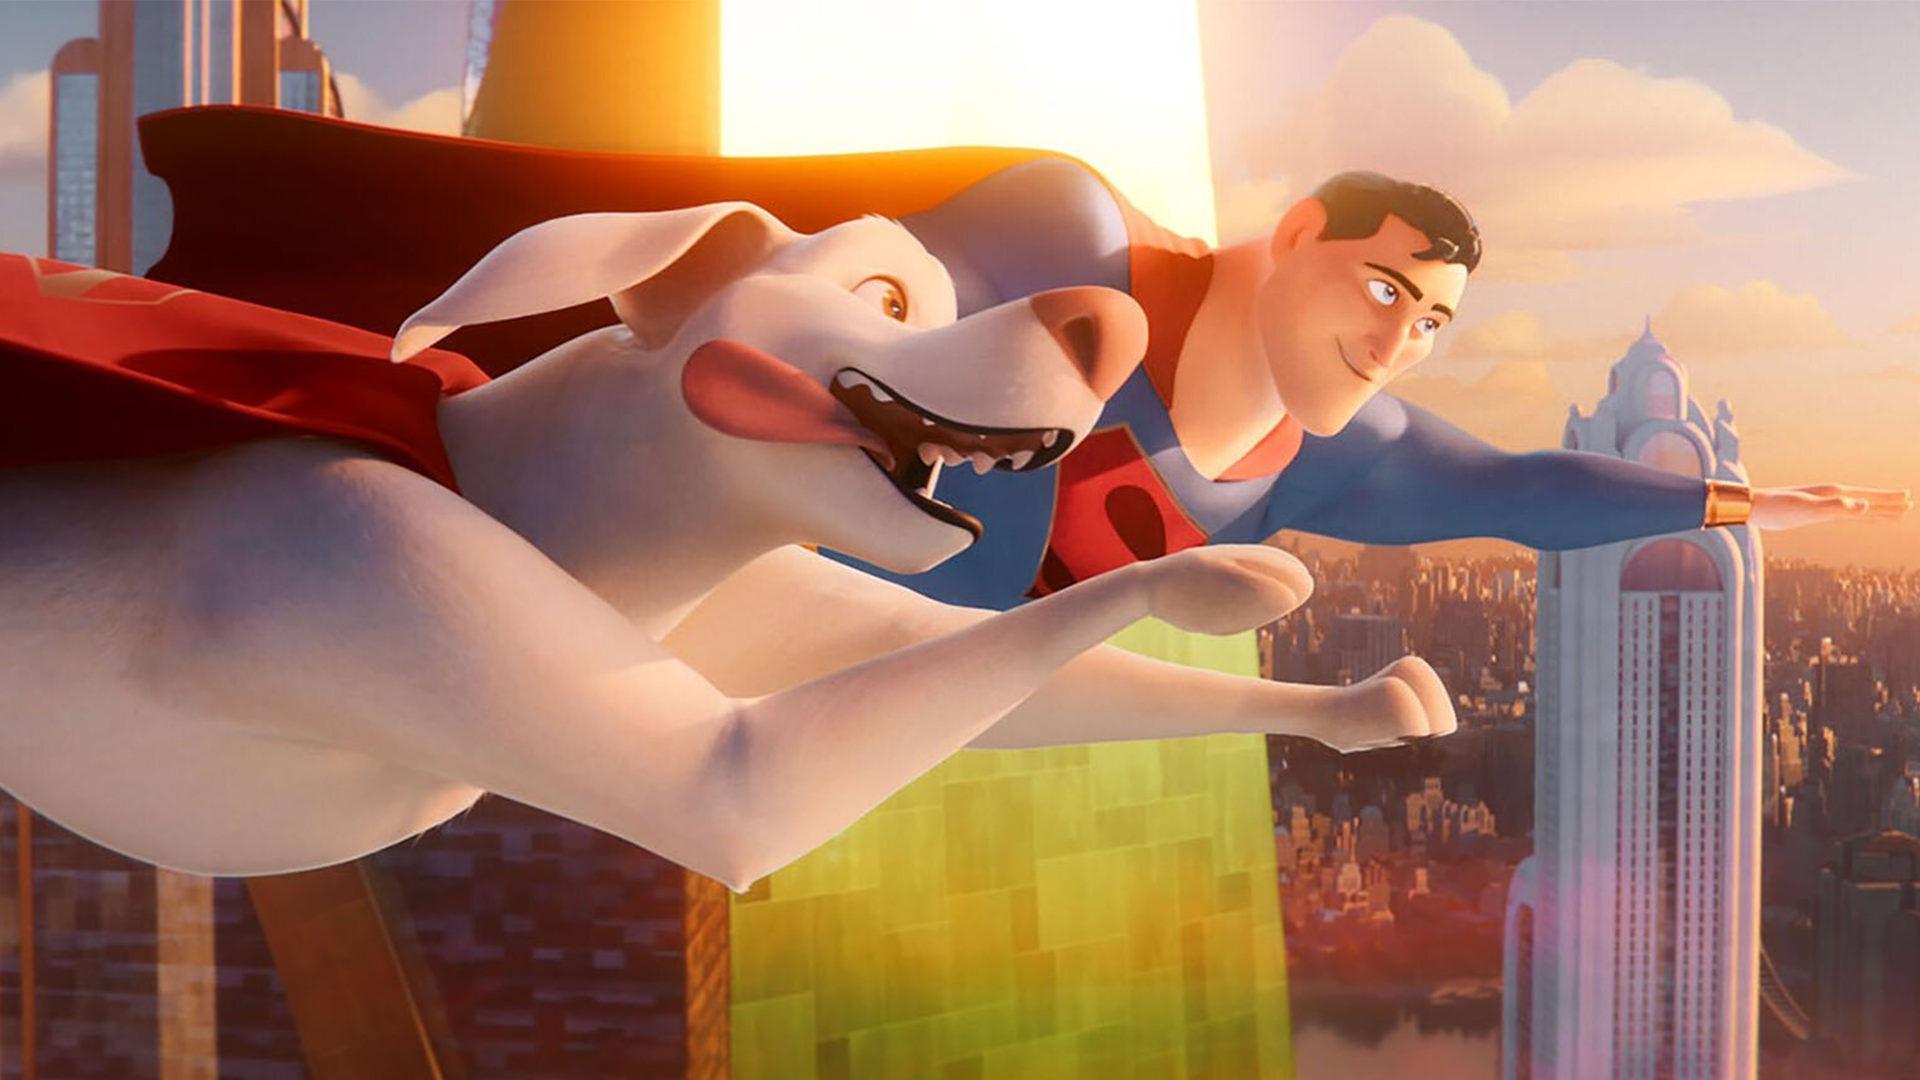 دواین جانسون در نقش سگ سوپرمن در اولین تریلر انیمیشن جدید دی سی